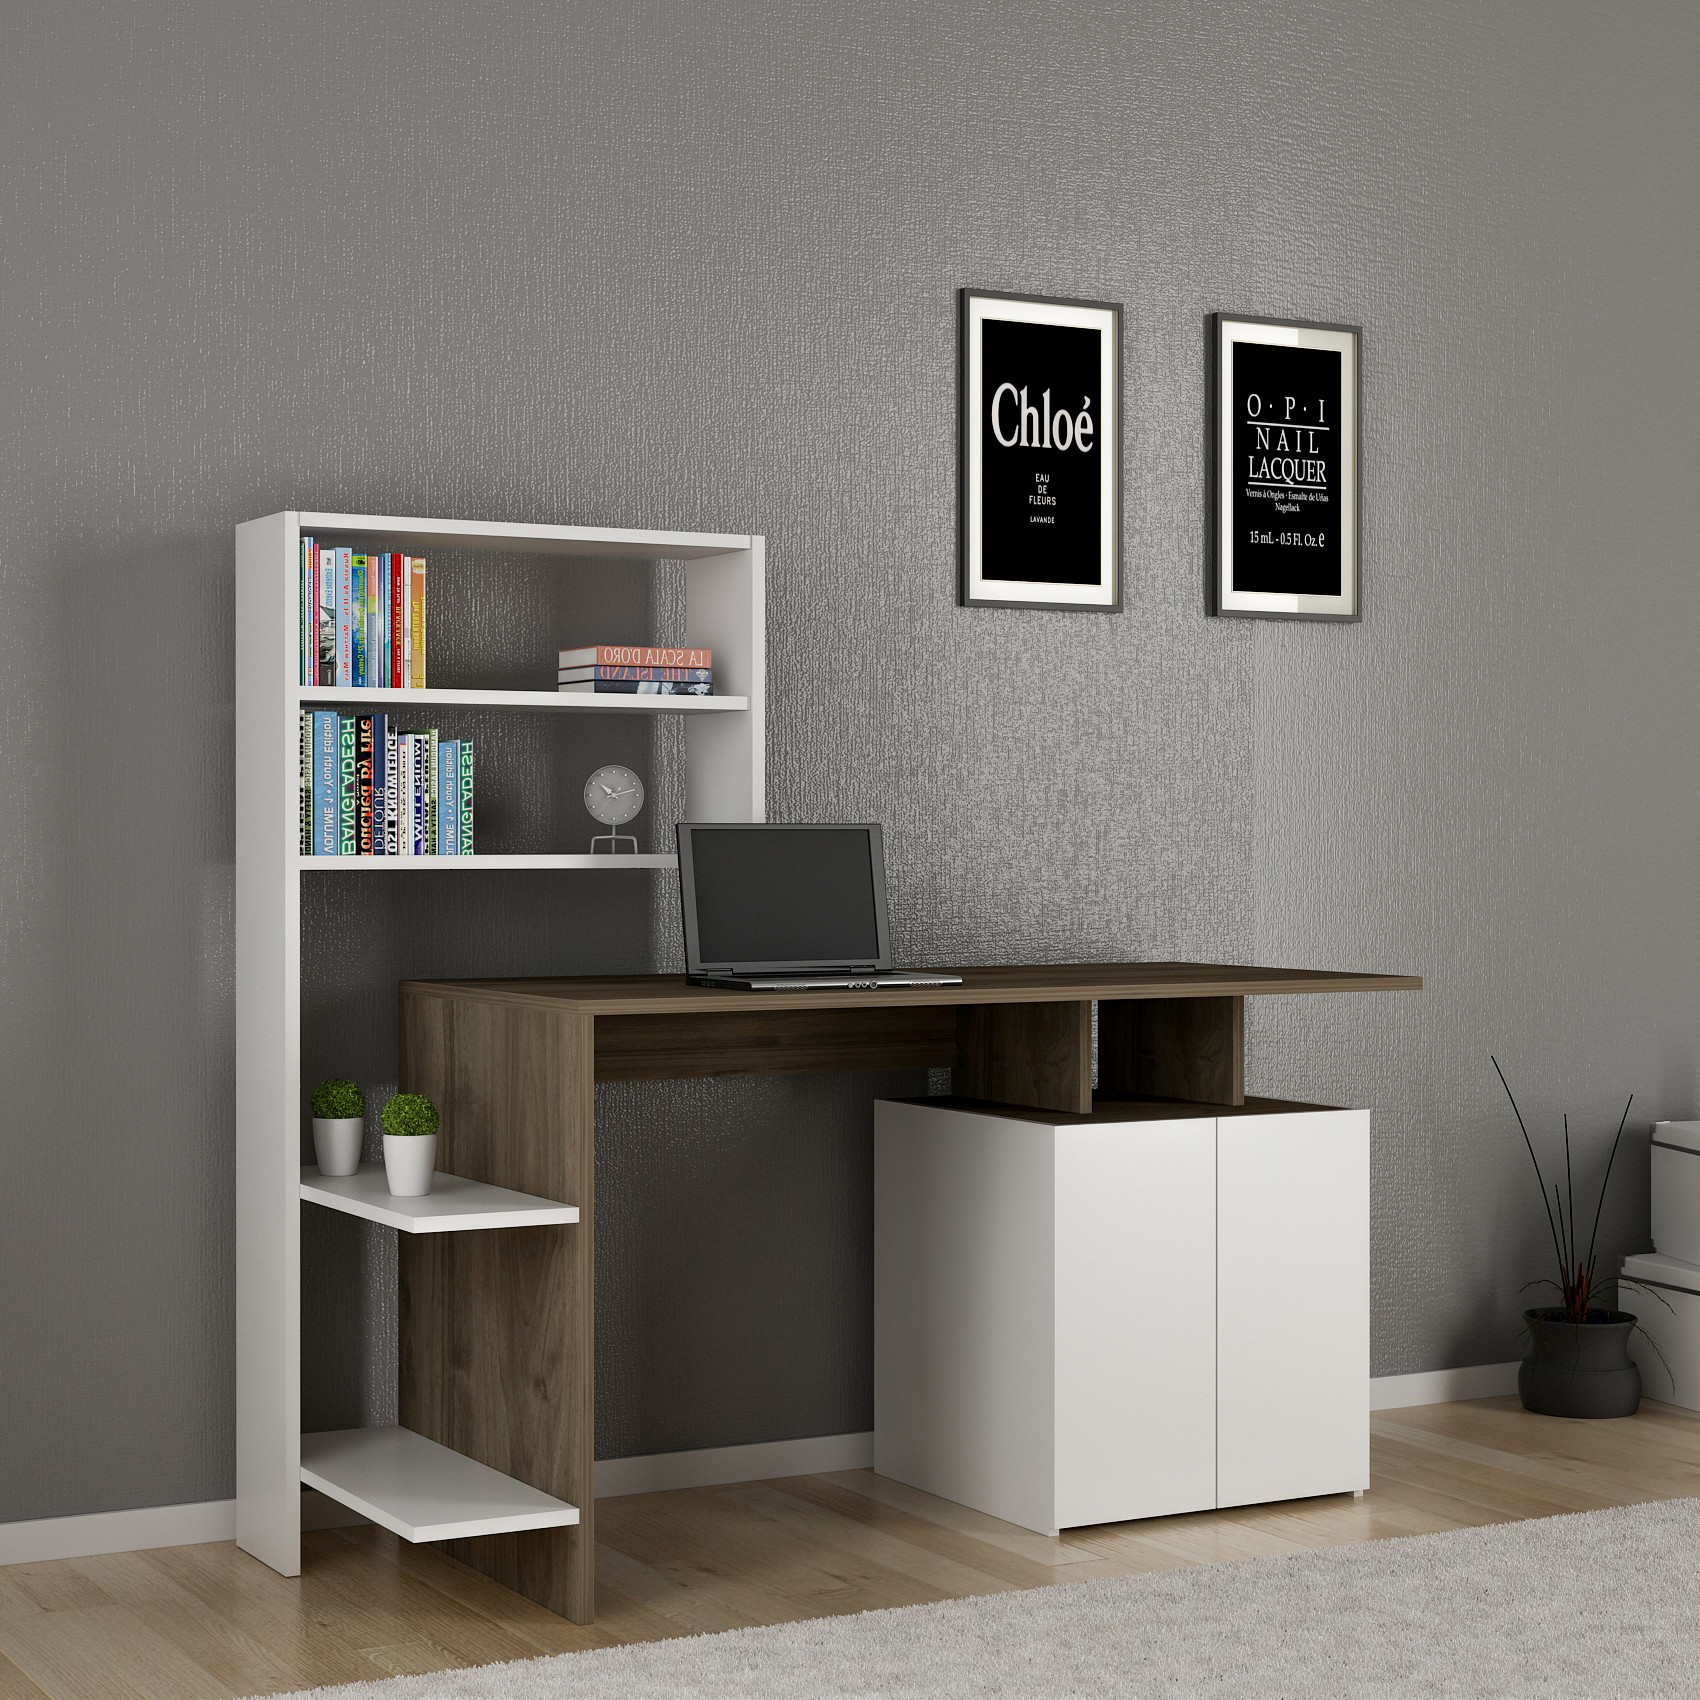 Kasini Desk, armadio e scaffale in legno naturale e bianco